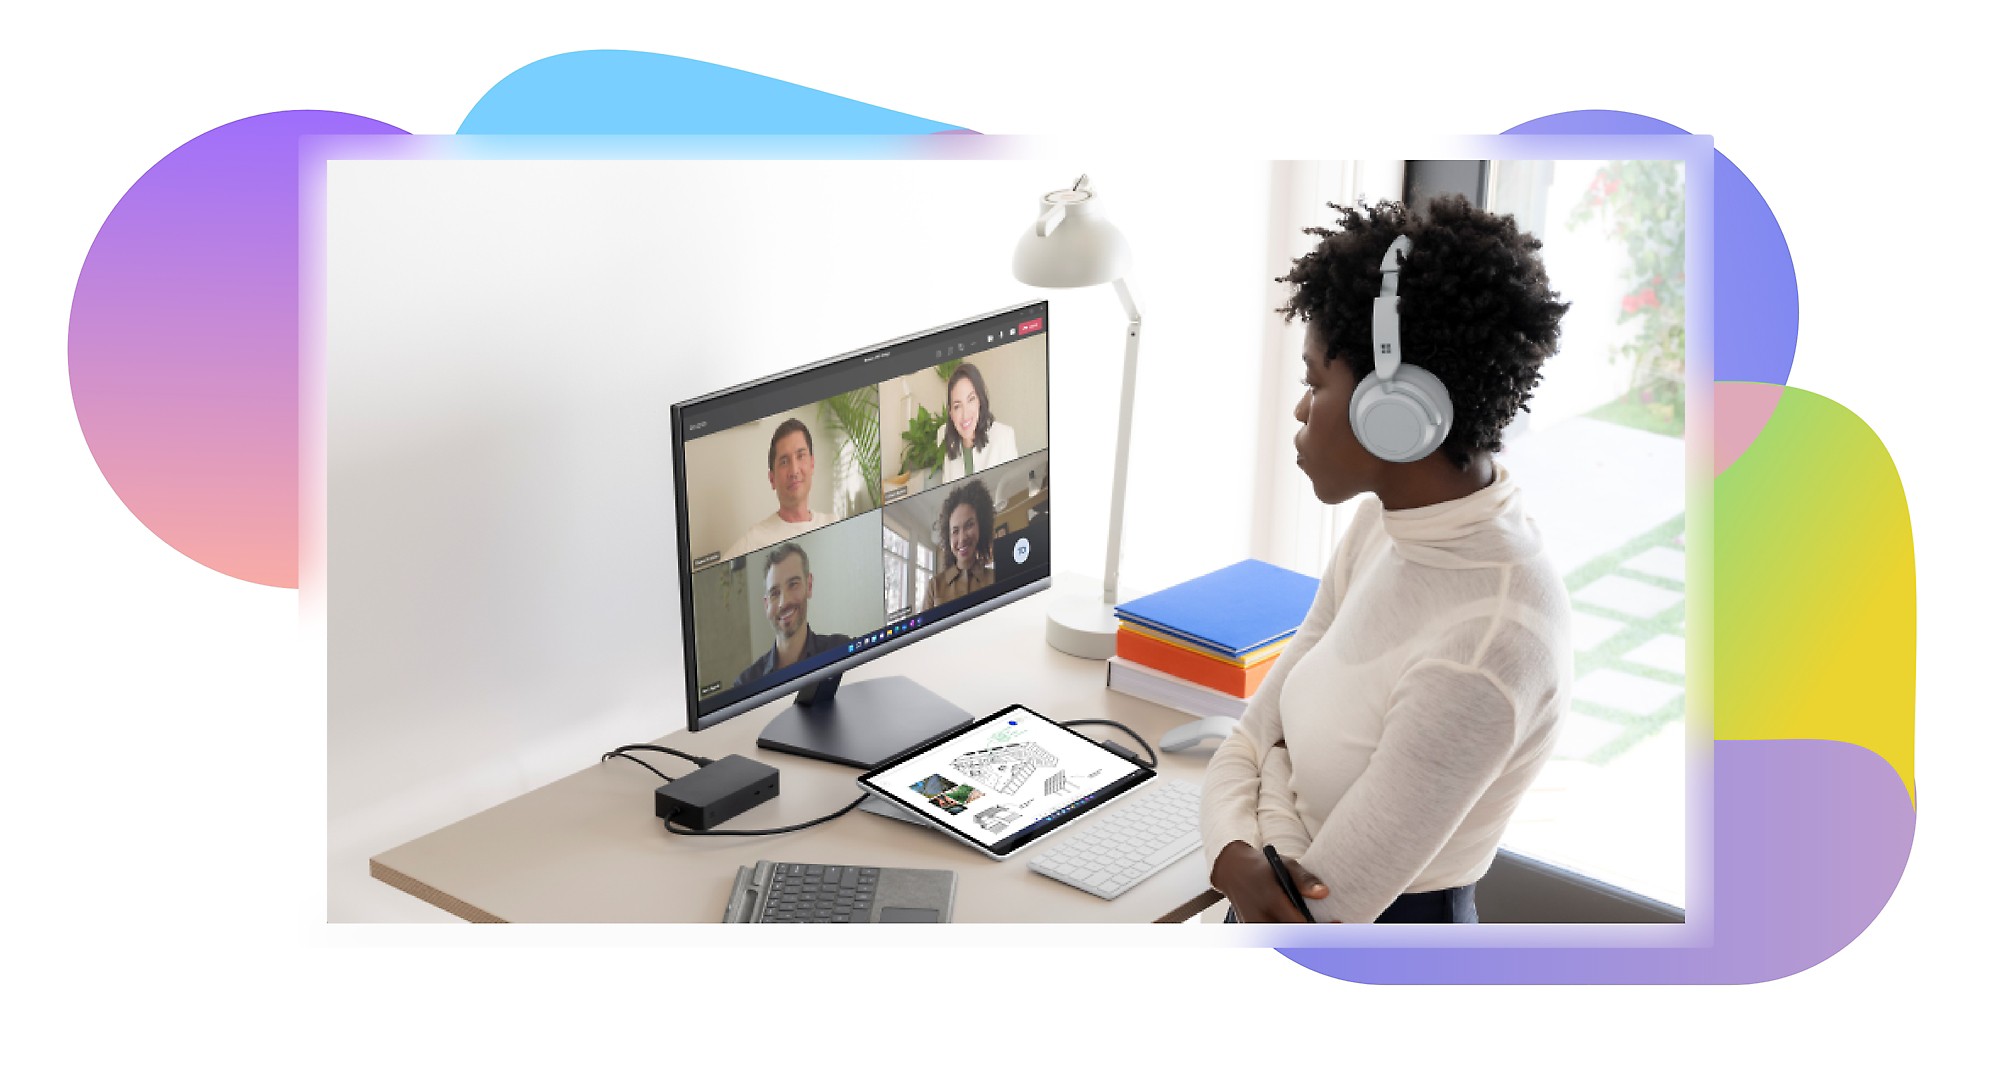 Personne assise à un bureau et portant un casque de type serre-tête. Elle participe à un appel vidéo Teams avec quatre autres personnes apparaissant sur un écran d’ordinateur.